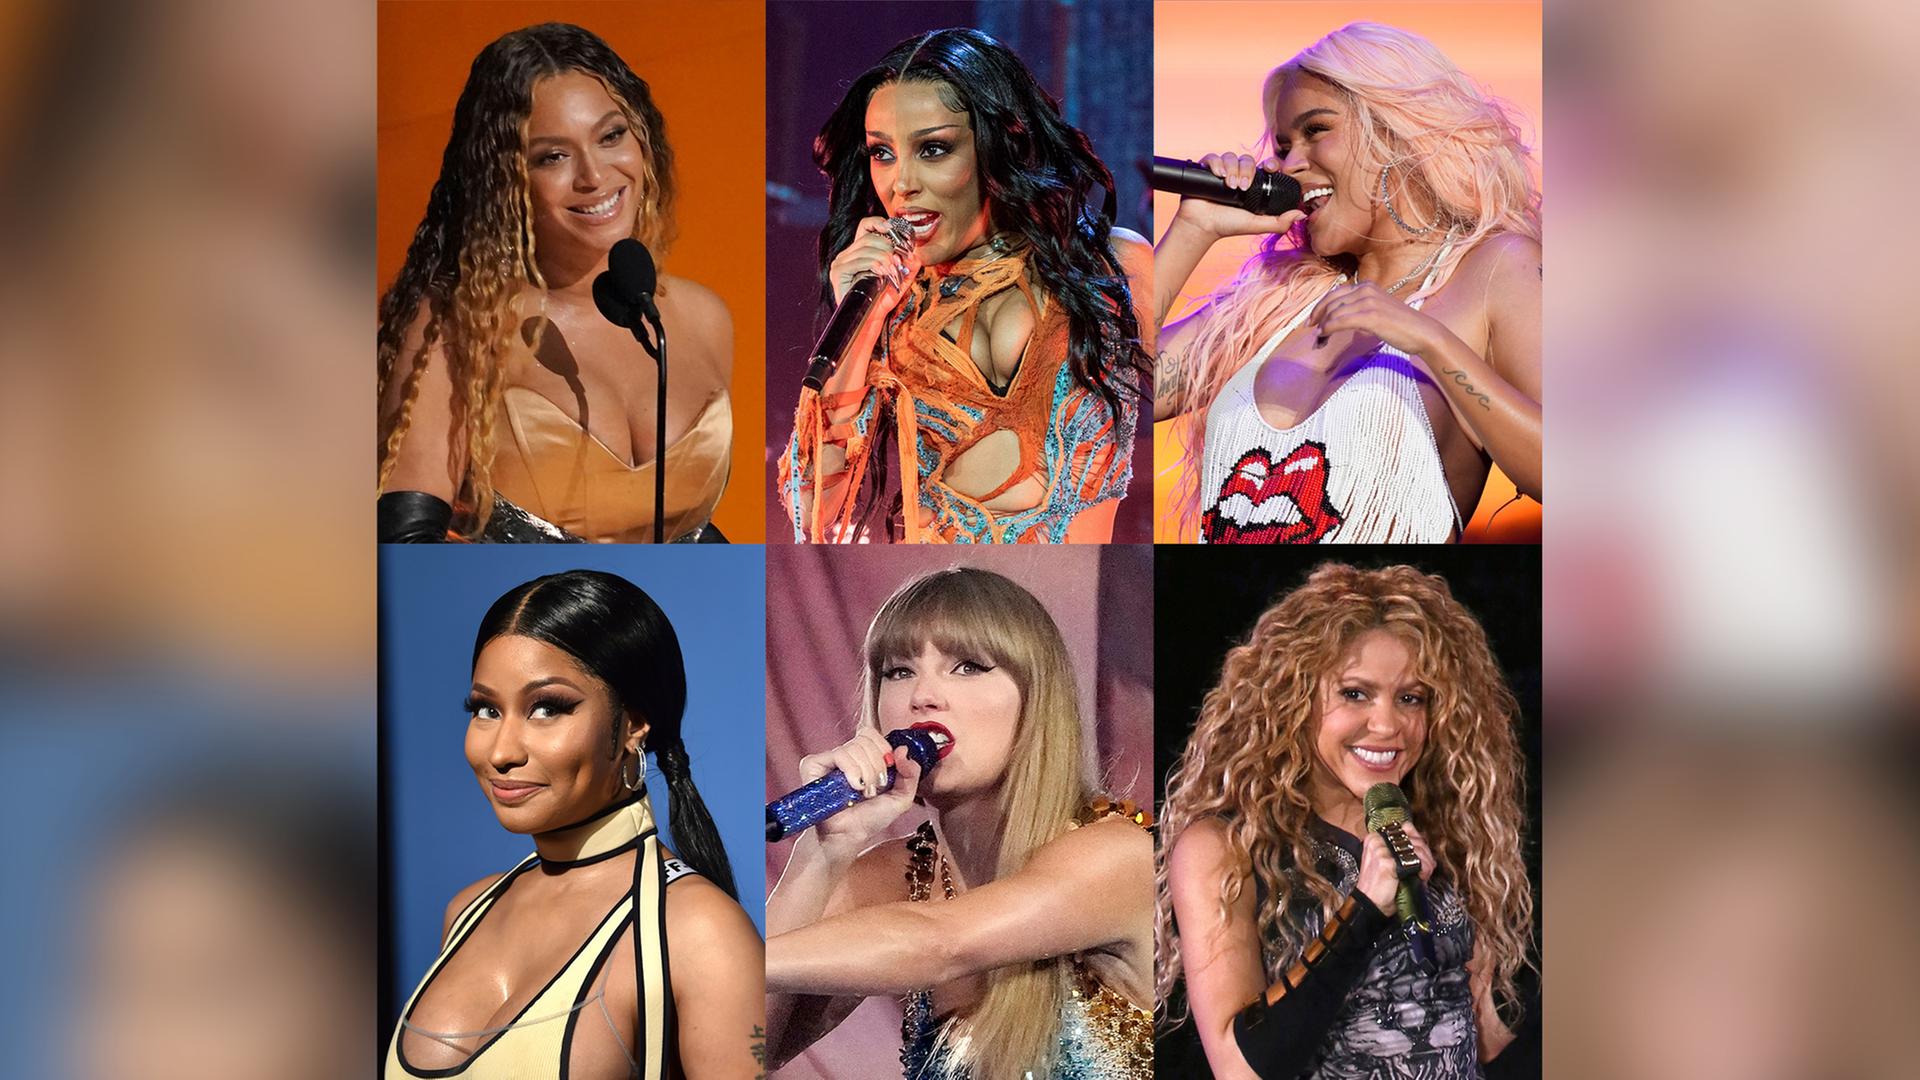 Diese Fotokombination zeigt alle weiblichen Nominierten als Künstlerin des Jahres für die MTV Video Music Awards, obere Reihe von links: Beyoncé, Doja Cat, Karol G, untere Reihe von links: Nicki Minaj, Taylor Swift und Shakira